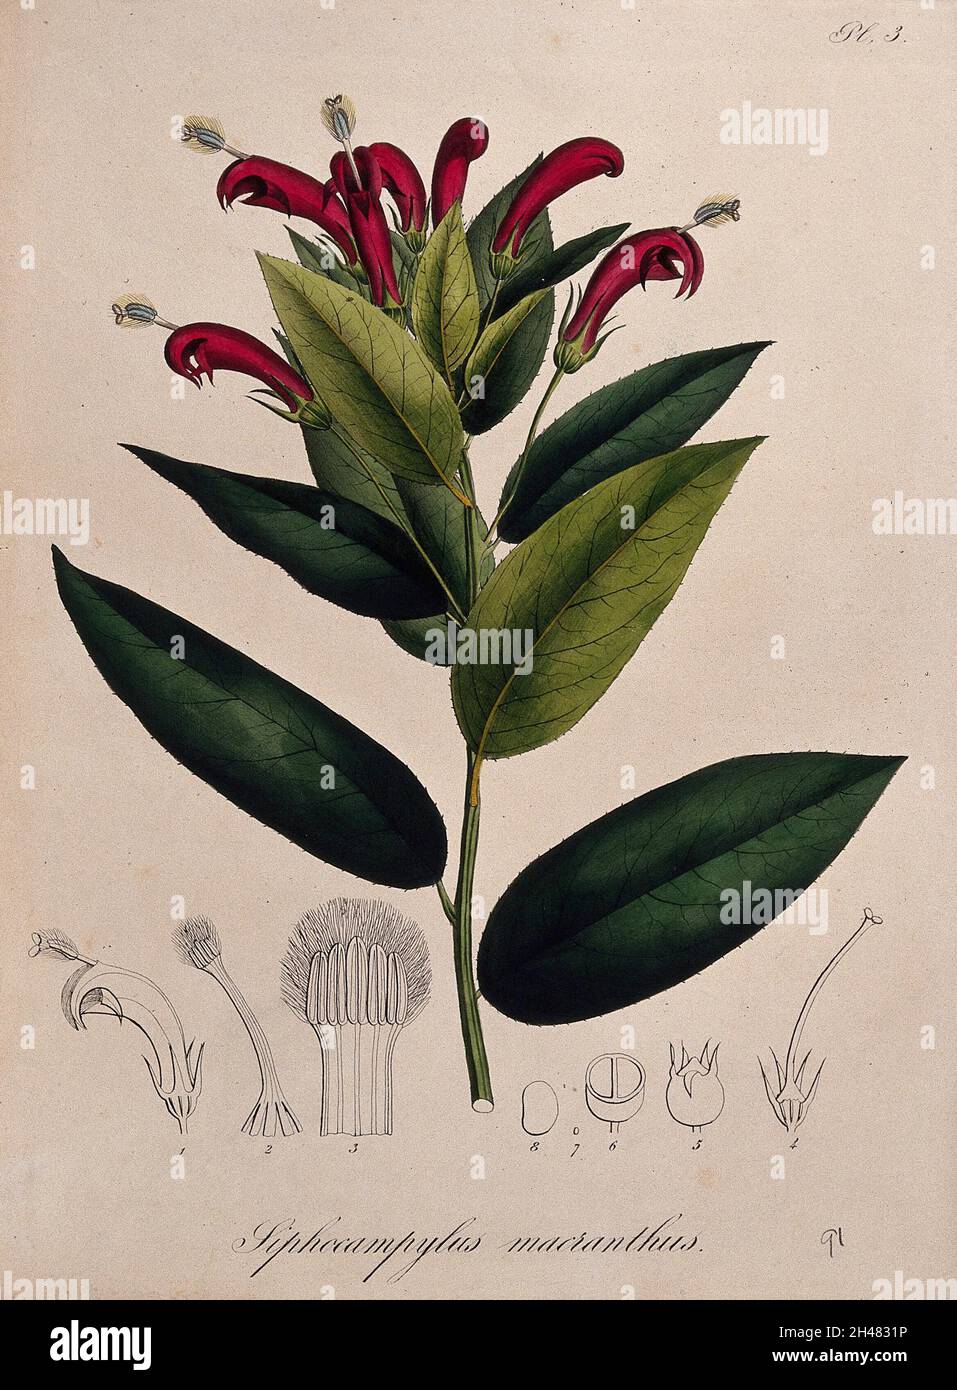 Une plante tropicale (Centropogon surinamensis): Tige de floraison et segments floraux.Lithographie colorée. Banque D'Images